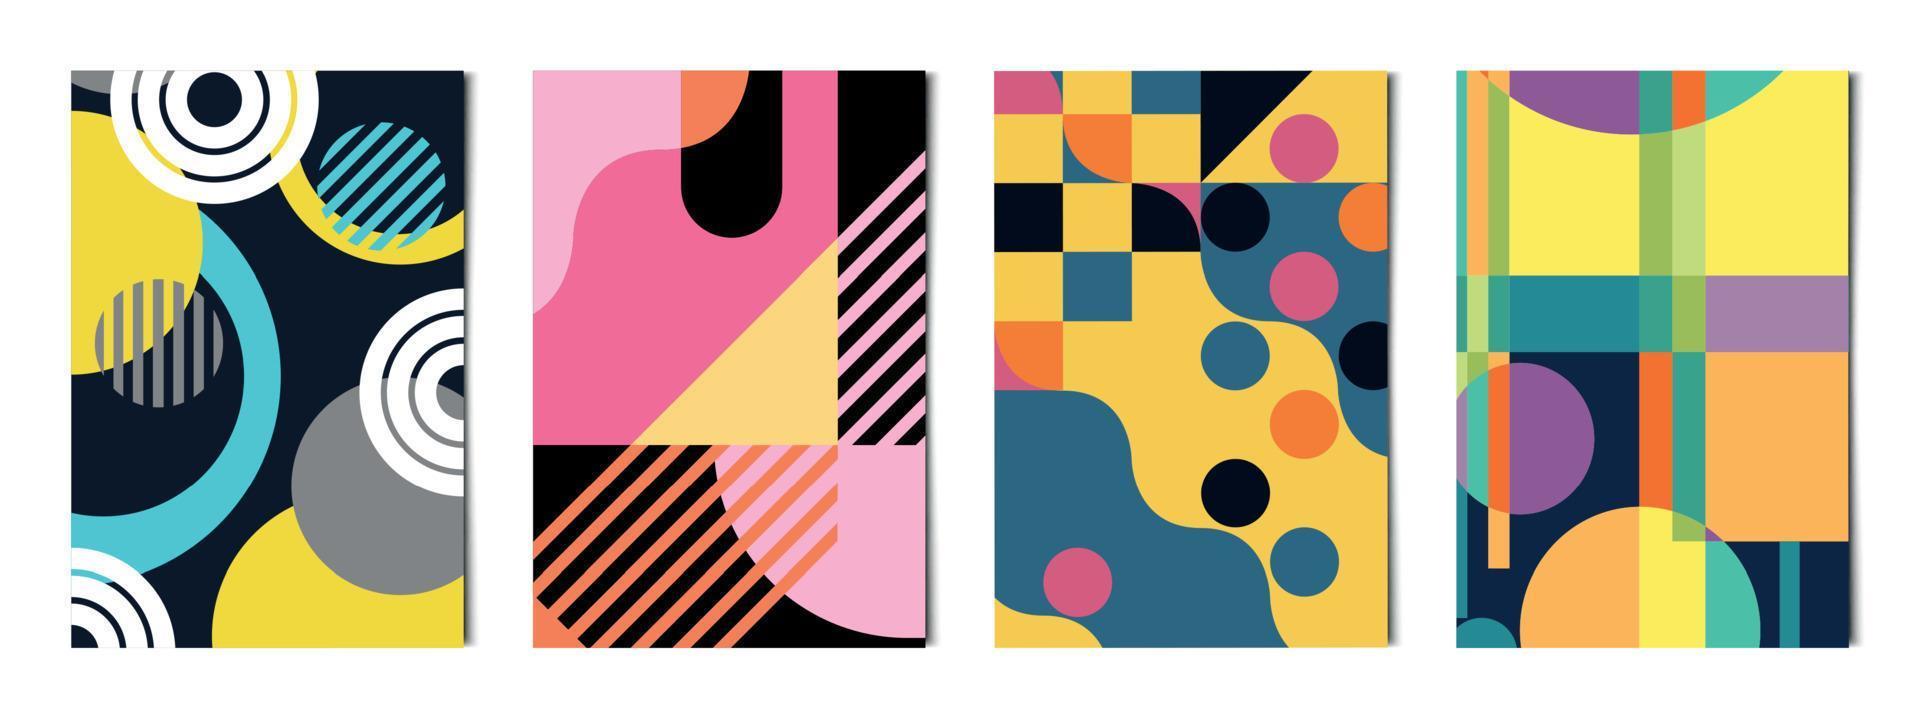 uppsättning av 4 st abstrakta geometriska former färgglada bakgrunder, mallar för reklam, visitkort, texturer - vektor